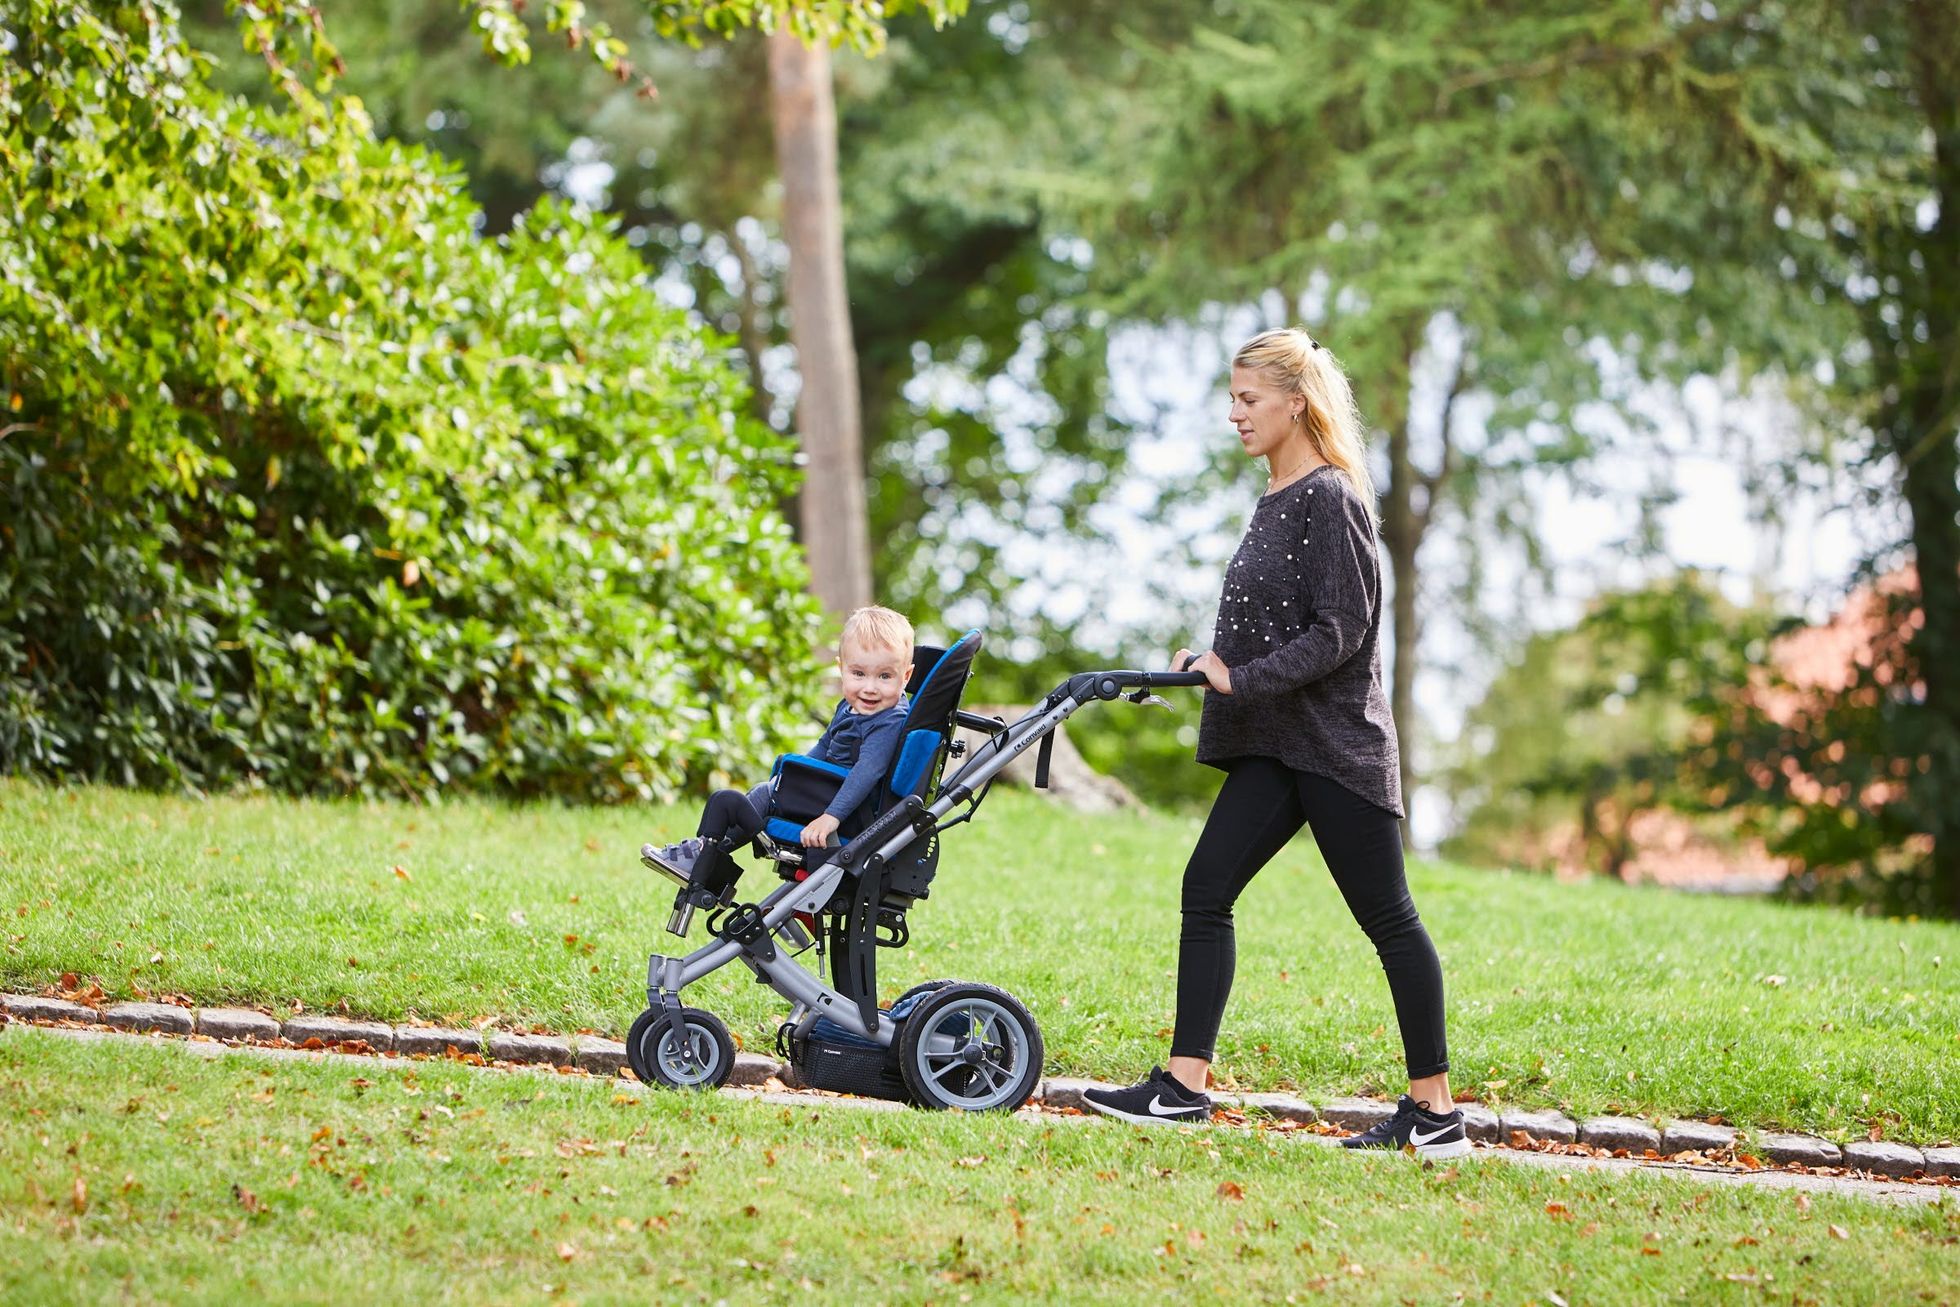 Kui laps ei kõnni ise üldse ja tema keha vajab rohkem toetamist, siis on heaks liikumisvahendiks kergkäru.